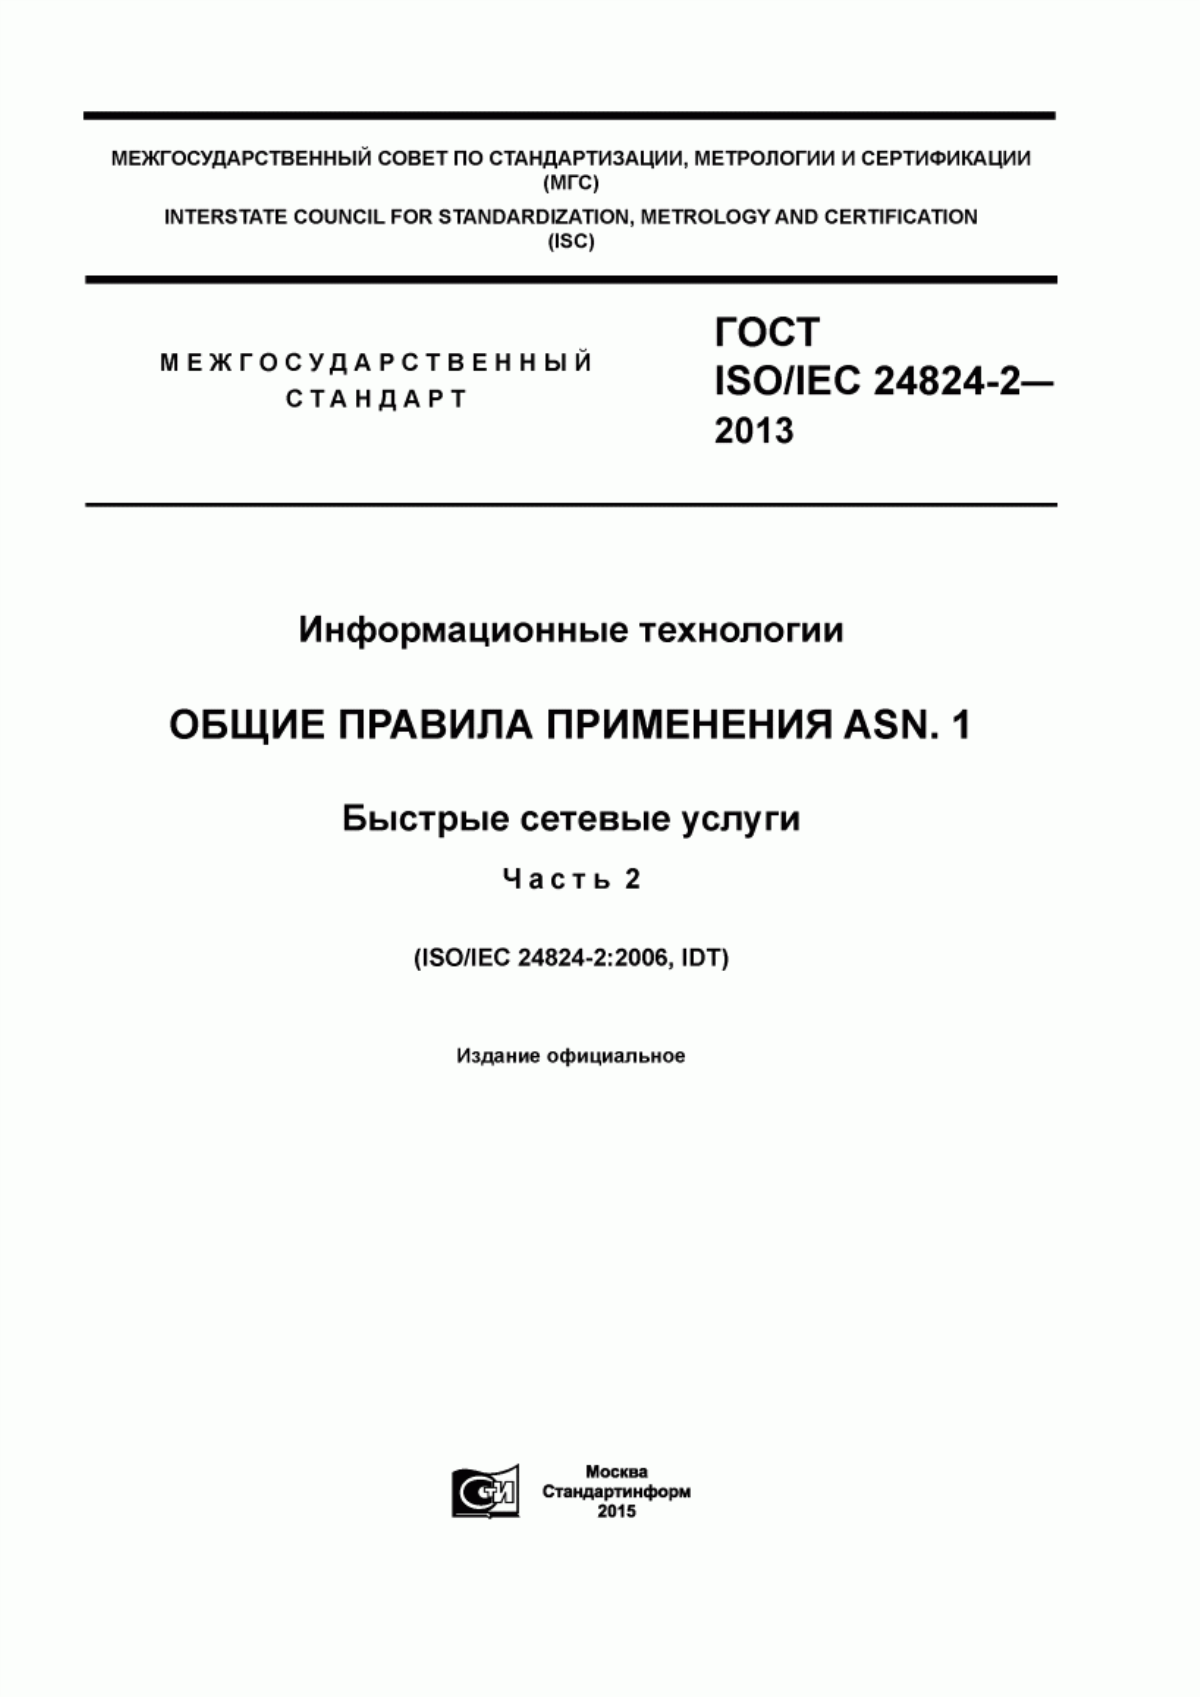 ГОСТ ISO/IEC 24824-2-2013 Информационные технологии. Общие правила применения ASN.1. Быстрые сетевые услуги. Часть 2